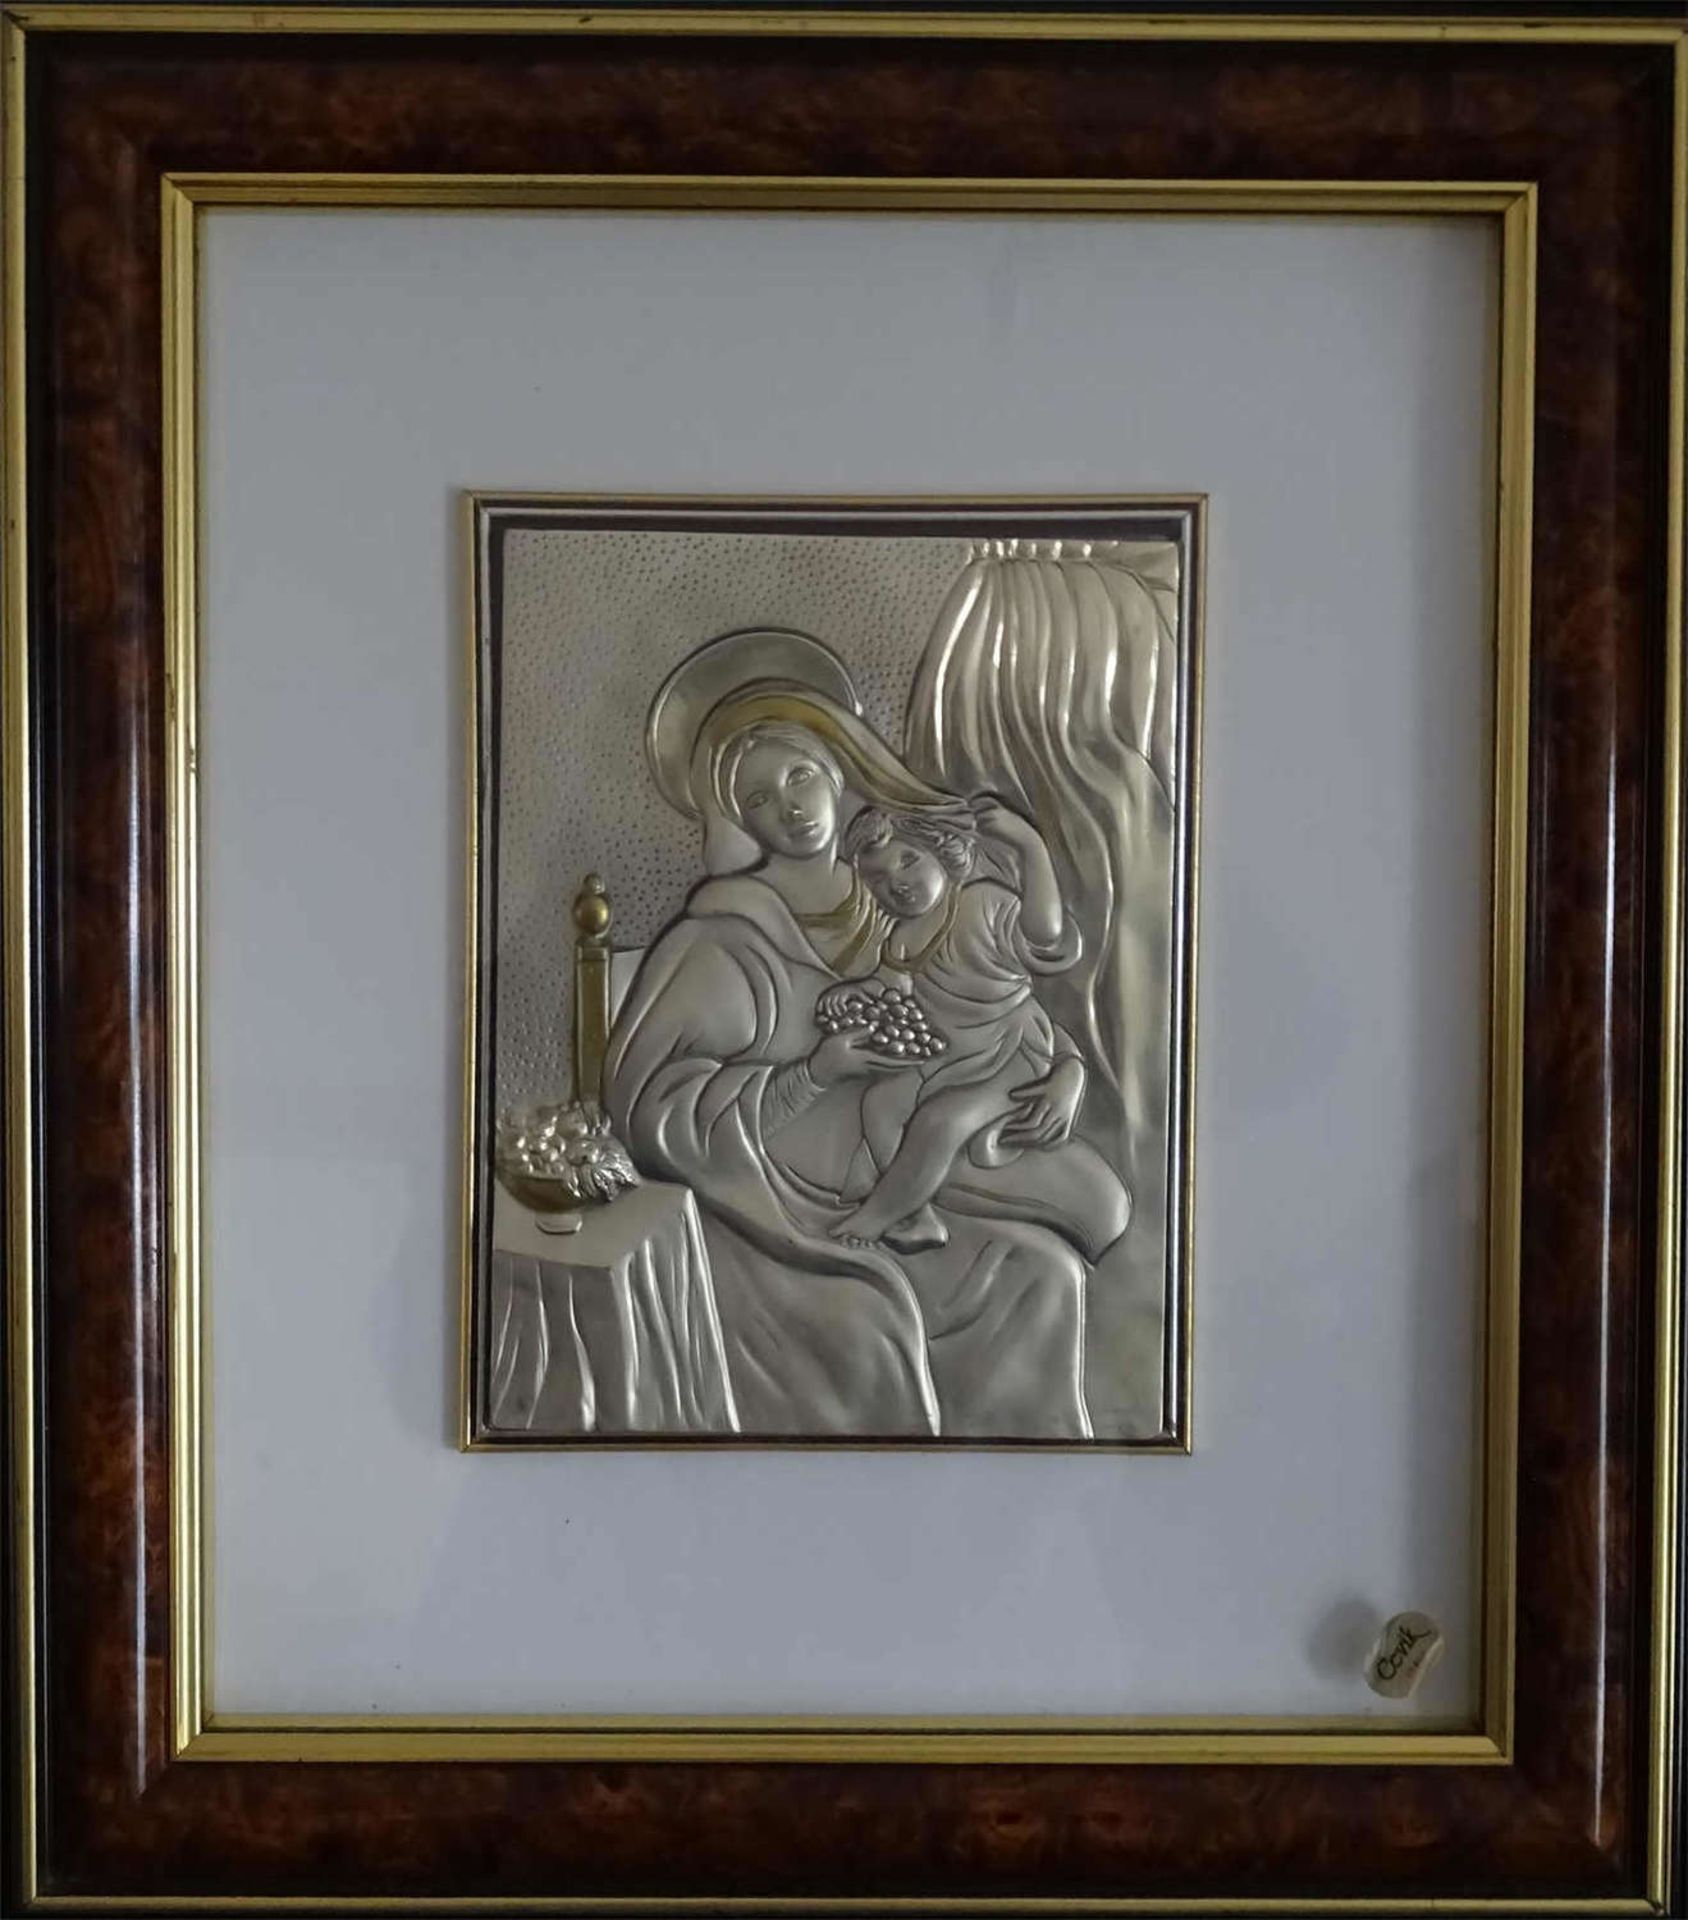 Silberblechbild "Maria mit Jesuskind", große Ausführung, 925er Punze. Chevik Italien, hinter Glas